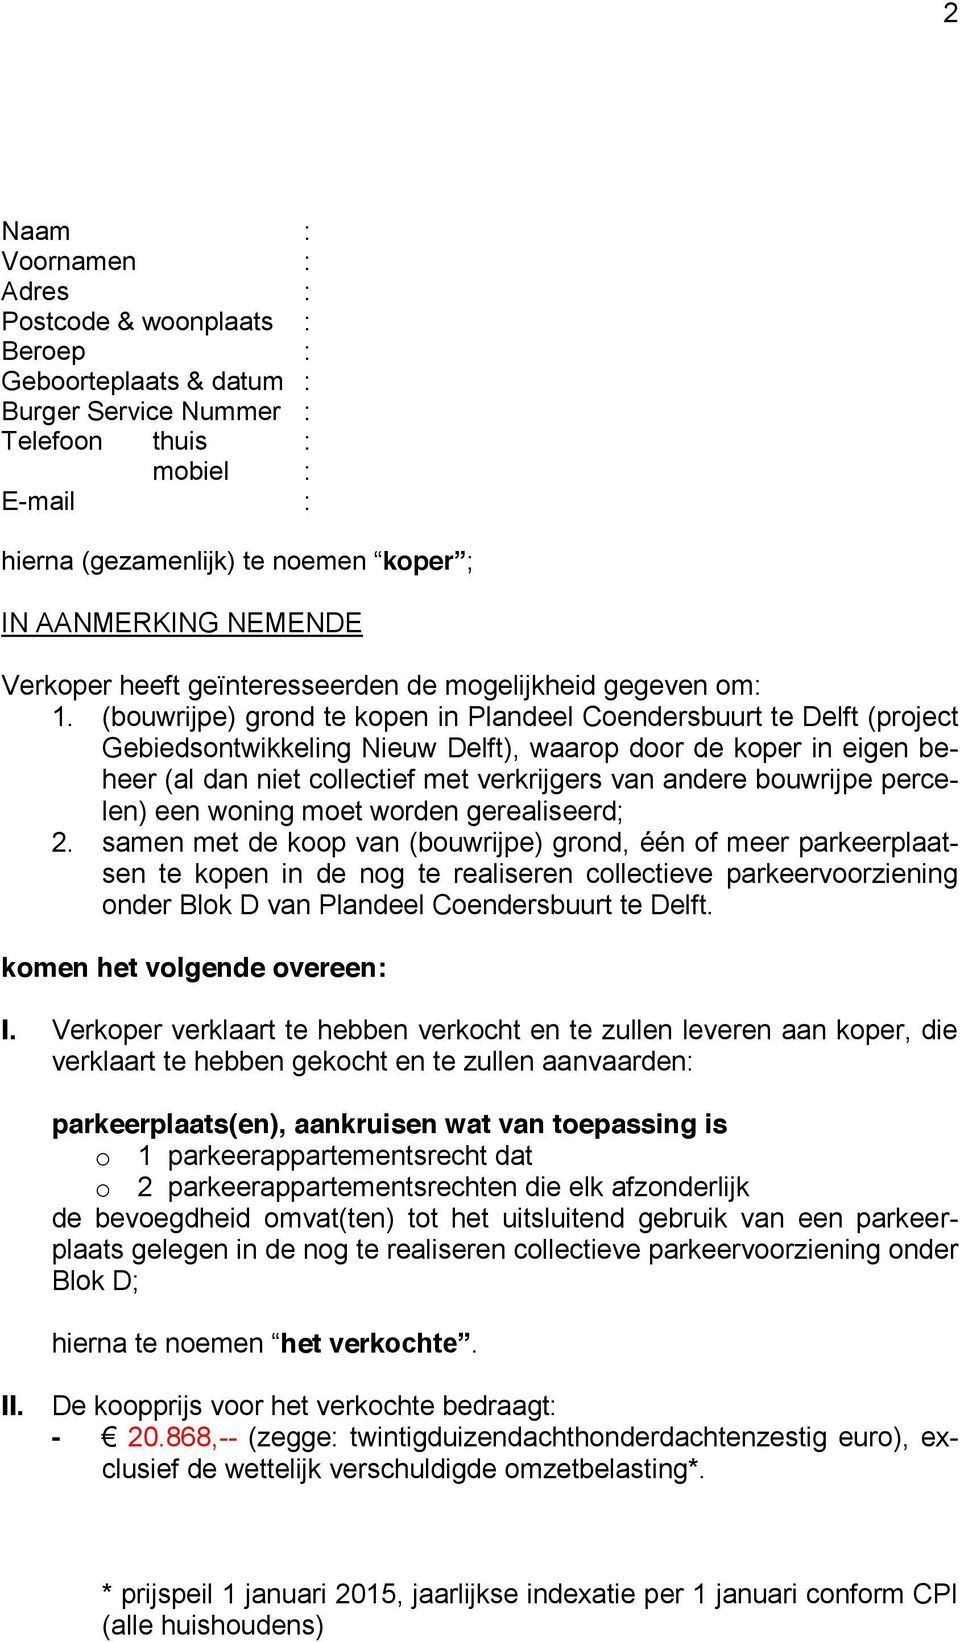 (bouwrijpe) grond te kopen in Plandeel Coendersbuurt te Delft (project Gebiedsontwikkeling Nieuw Delft), waarop door de koper in eigen beheer (al dan niet collectief met verkrijgers van andere